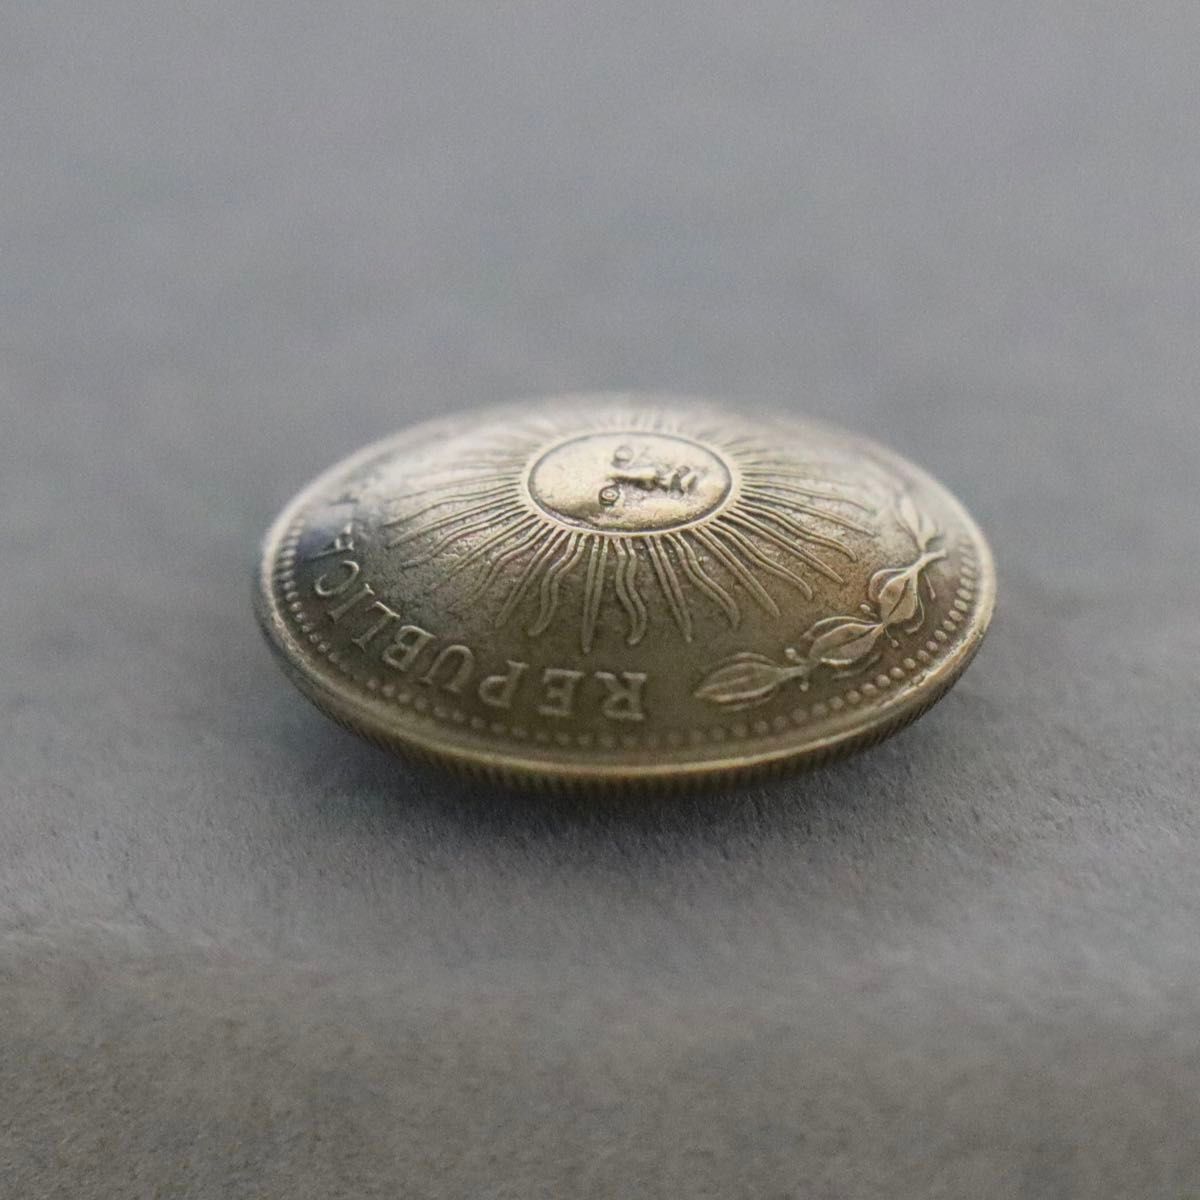 コイン コンチョ 太陽 アルゼンチン 10ペソ硬貨 ハンドメイド レザークラフト